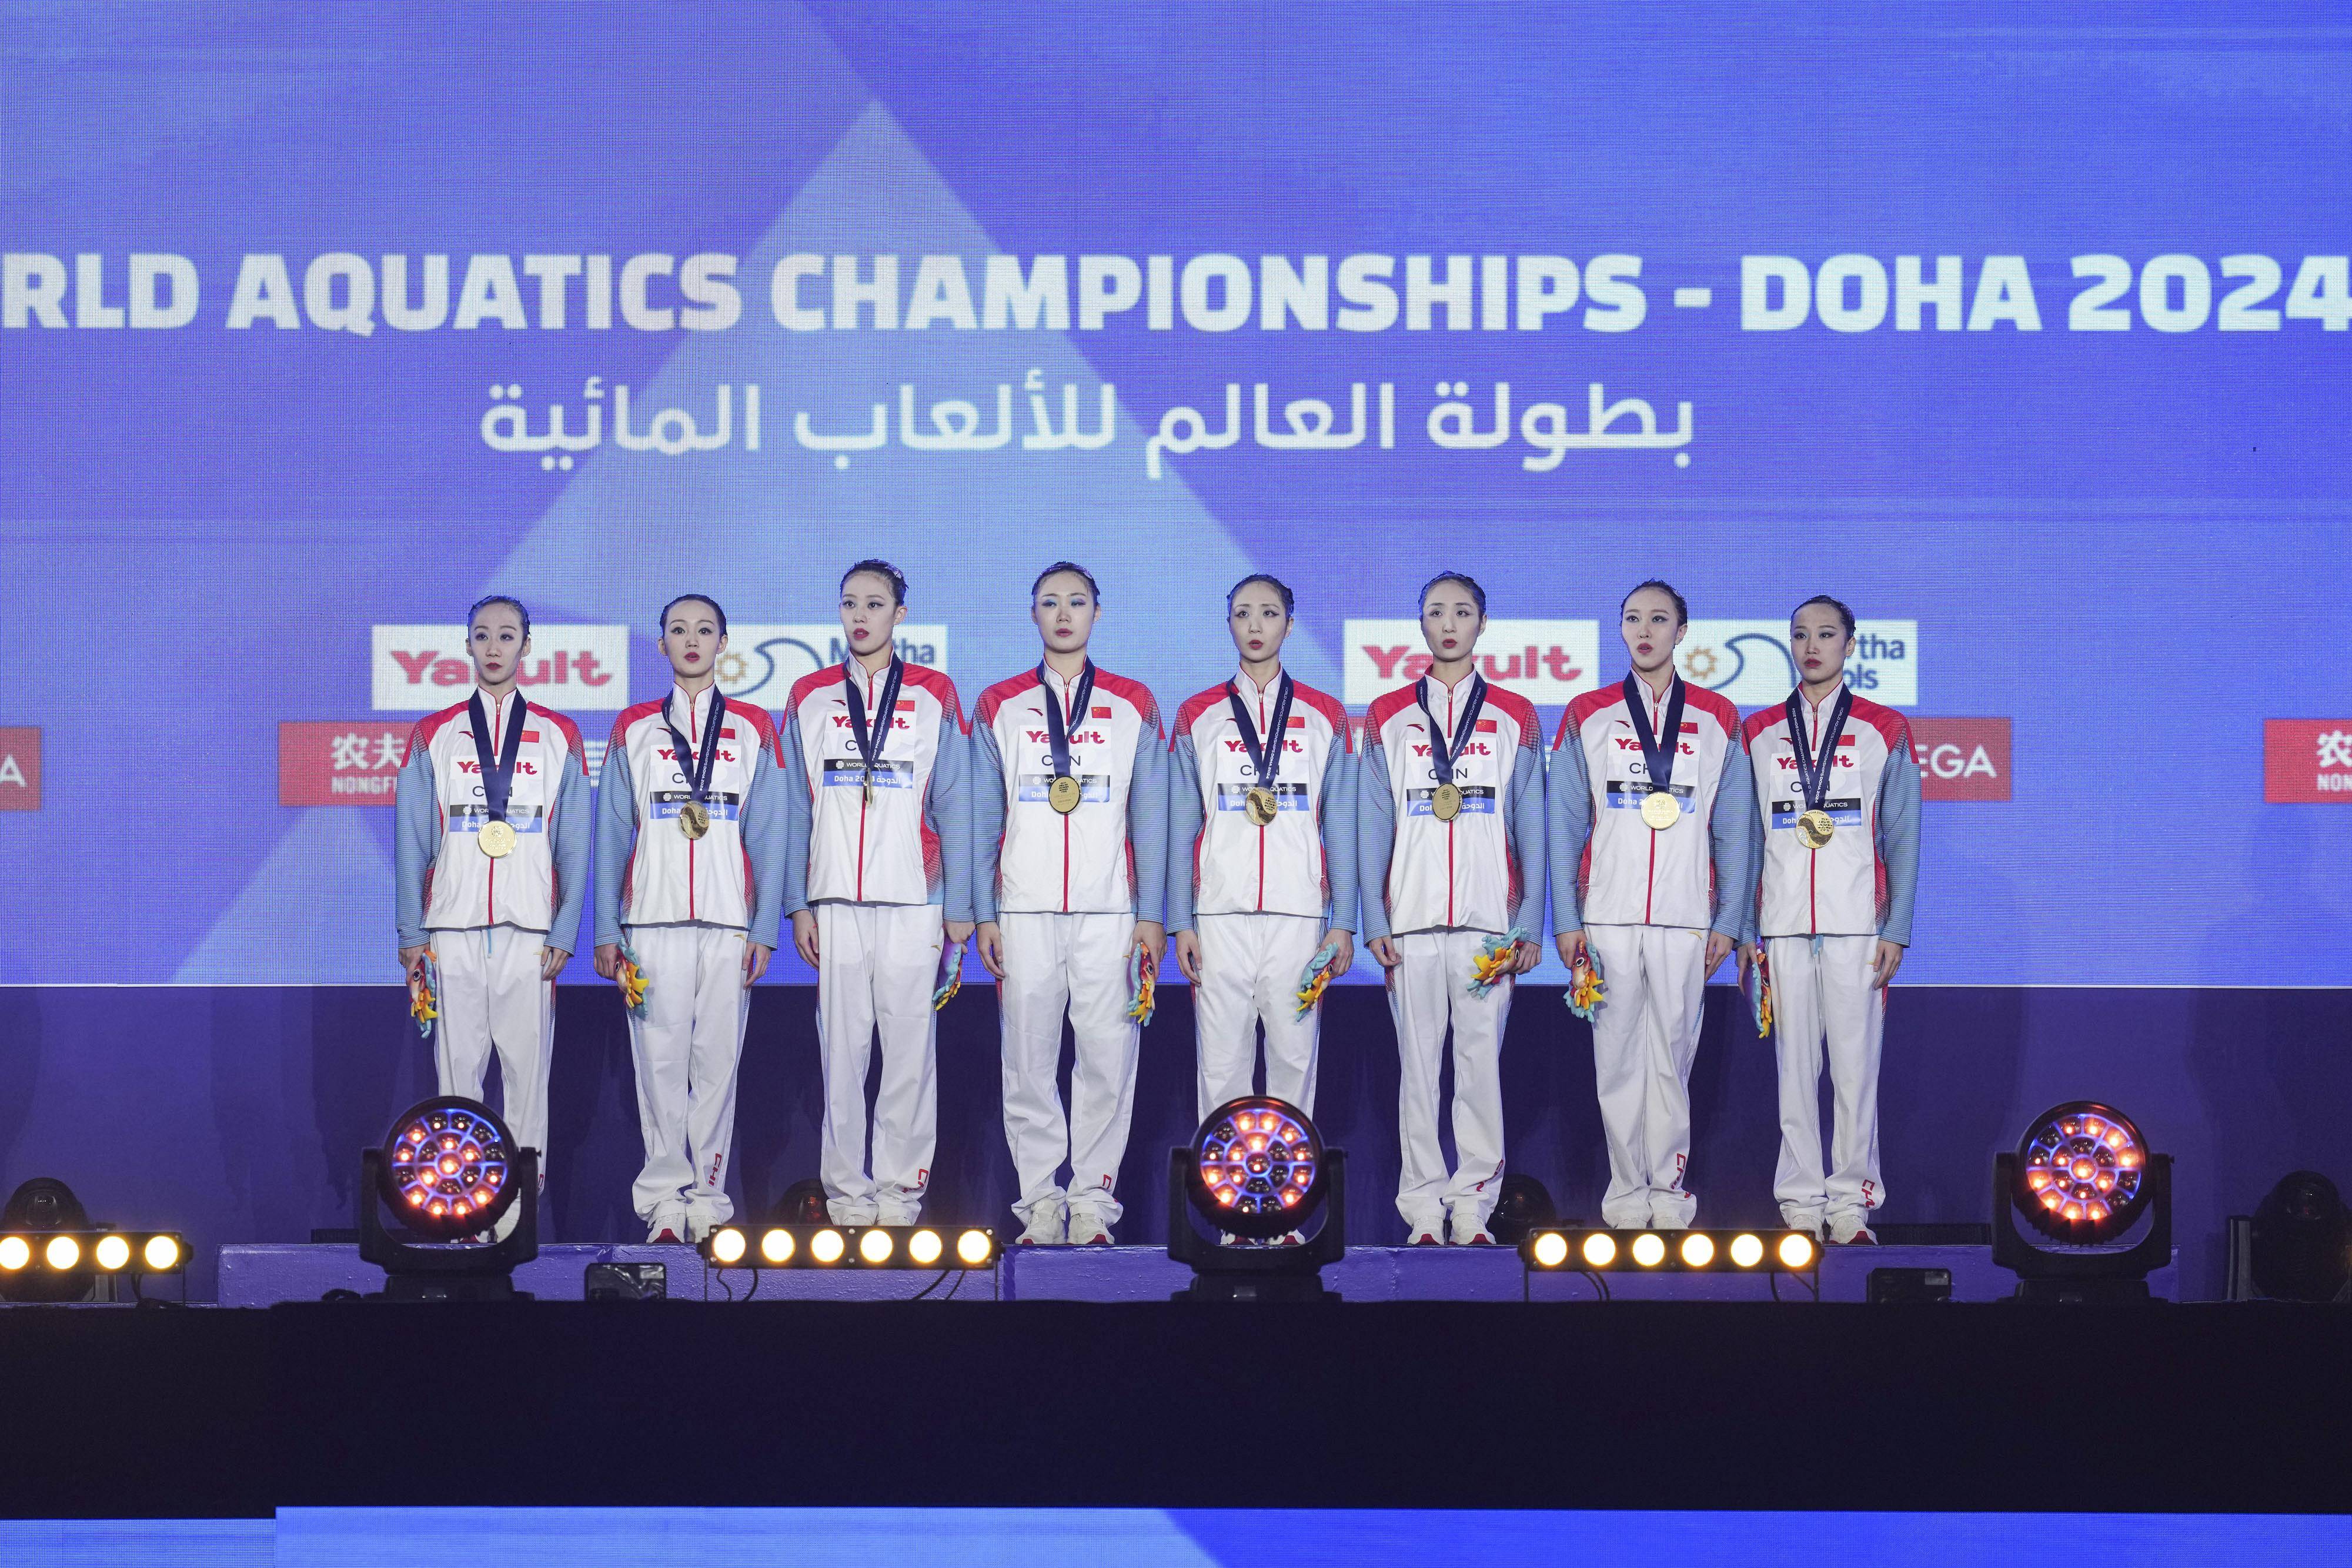 中国队获游泳世锦赛集体技巧自选冠军